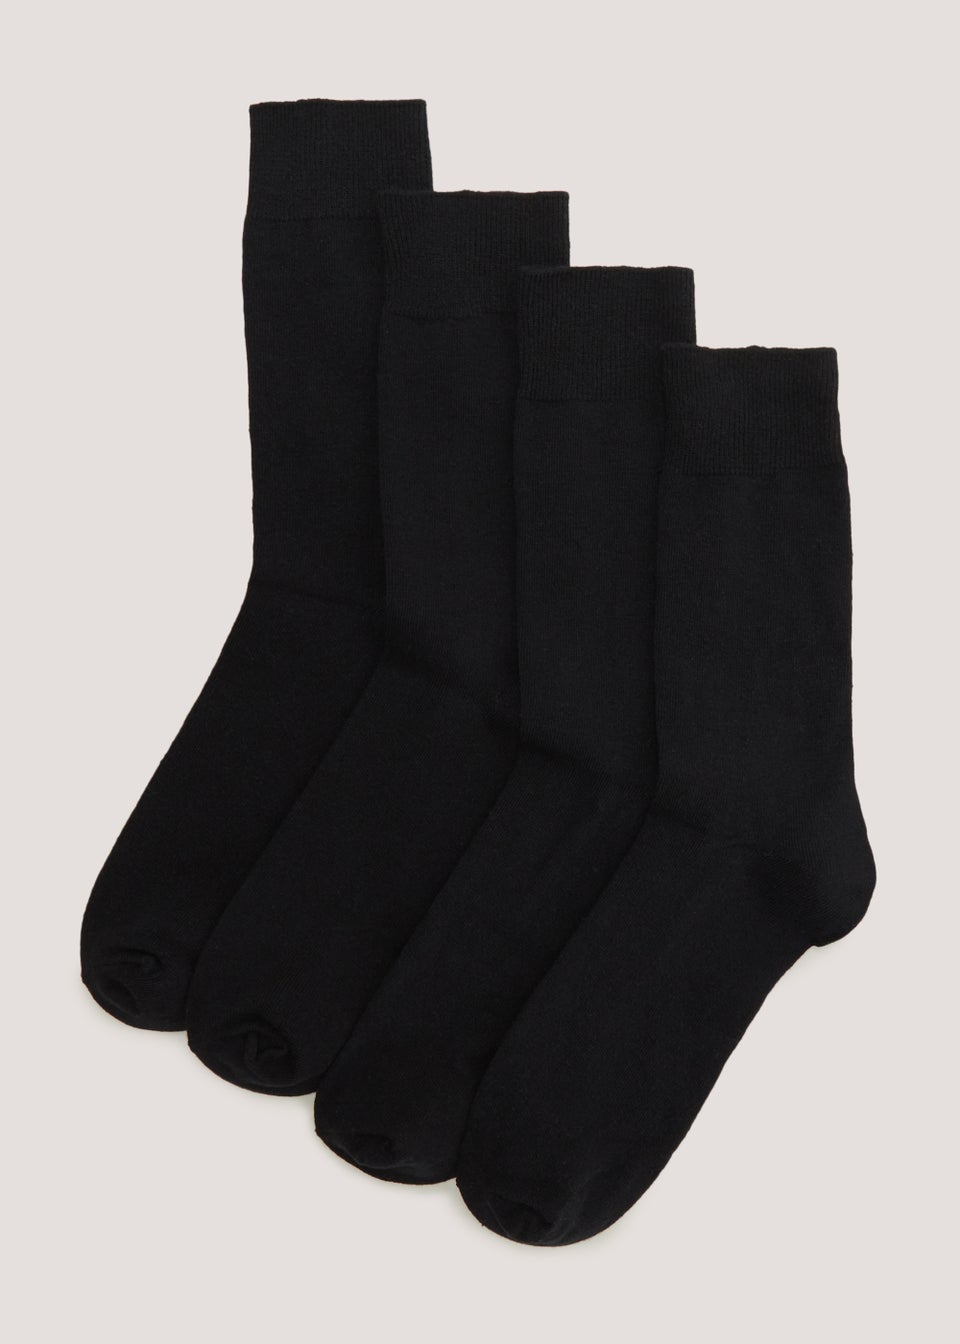 4 Pack Plain Black Socks